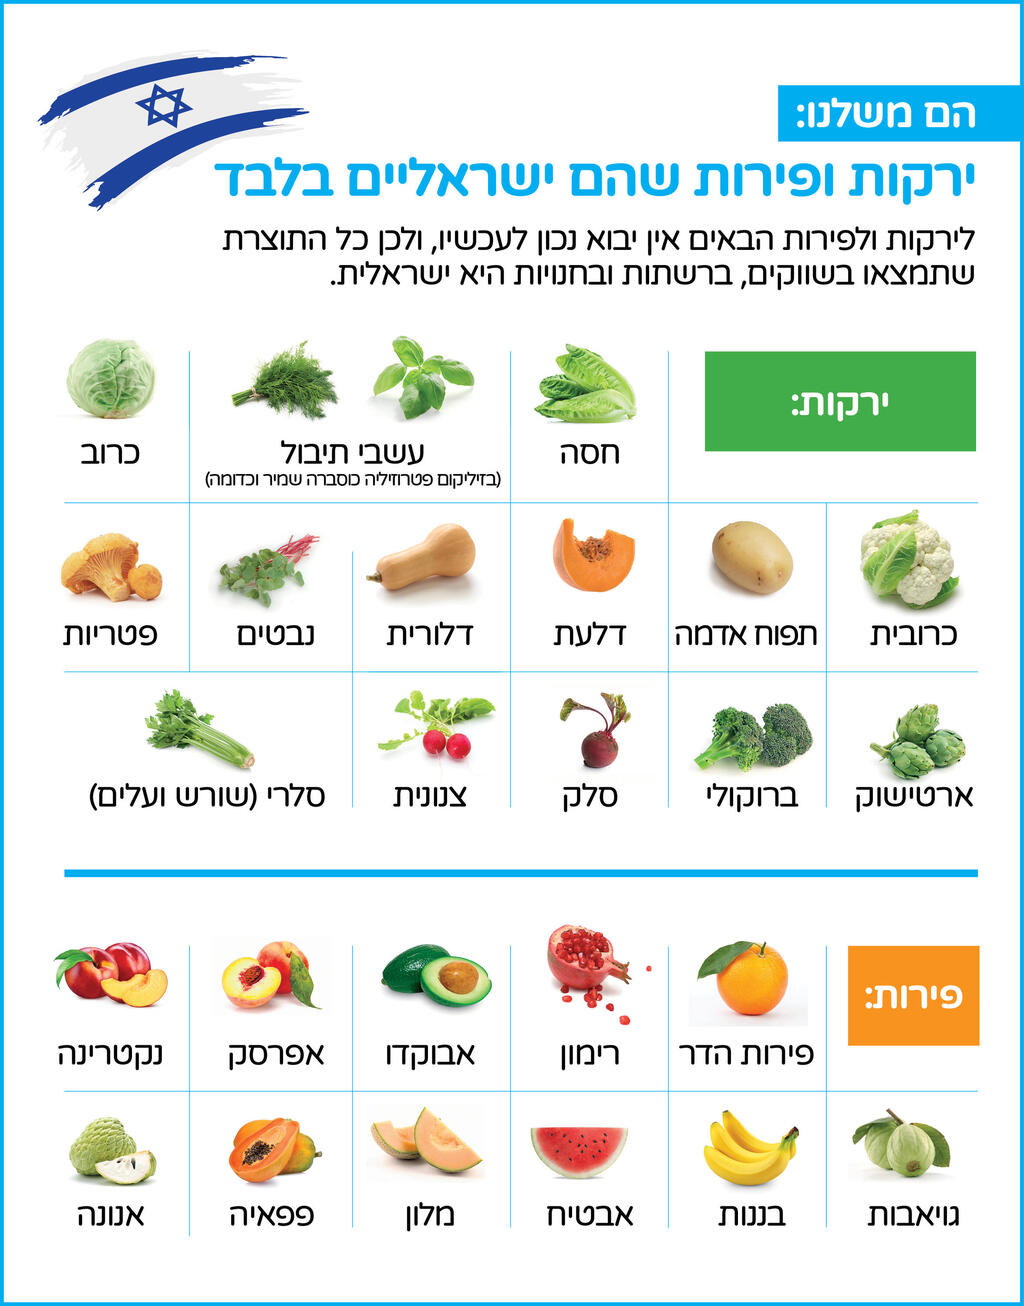 הסל הבטוח: ירקות ופירות שהם רק מישראל